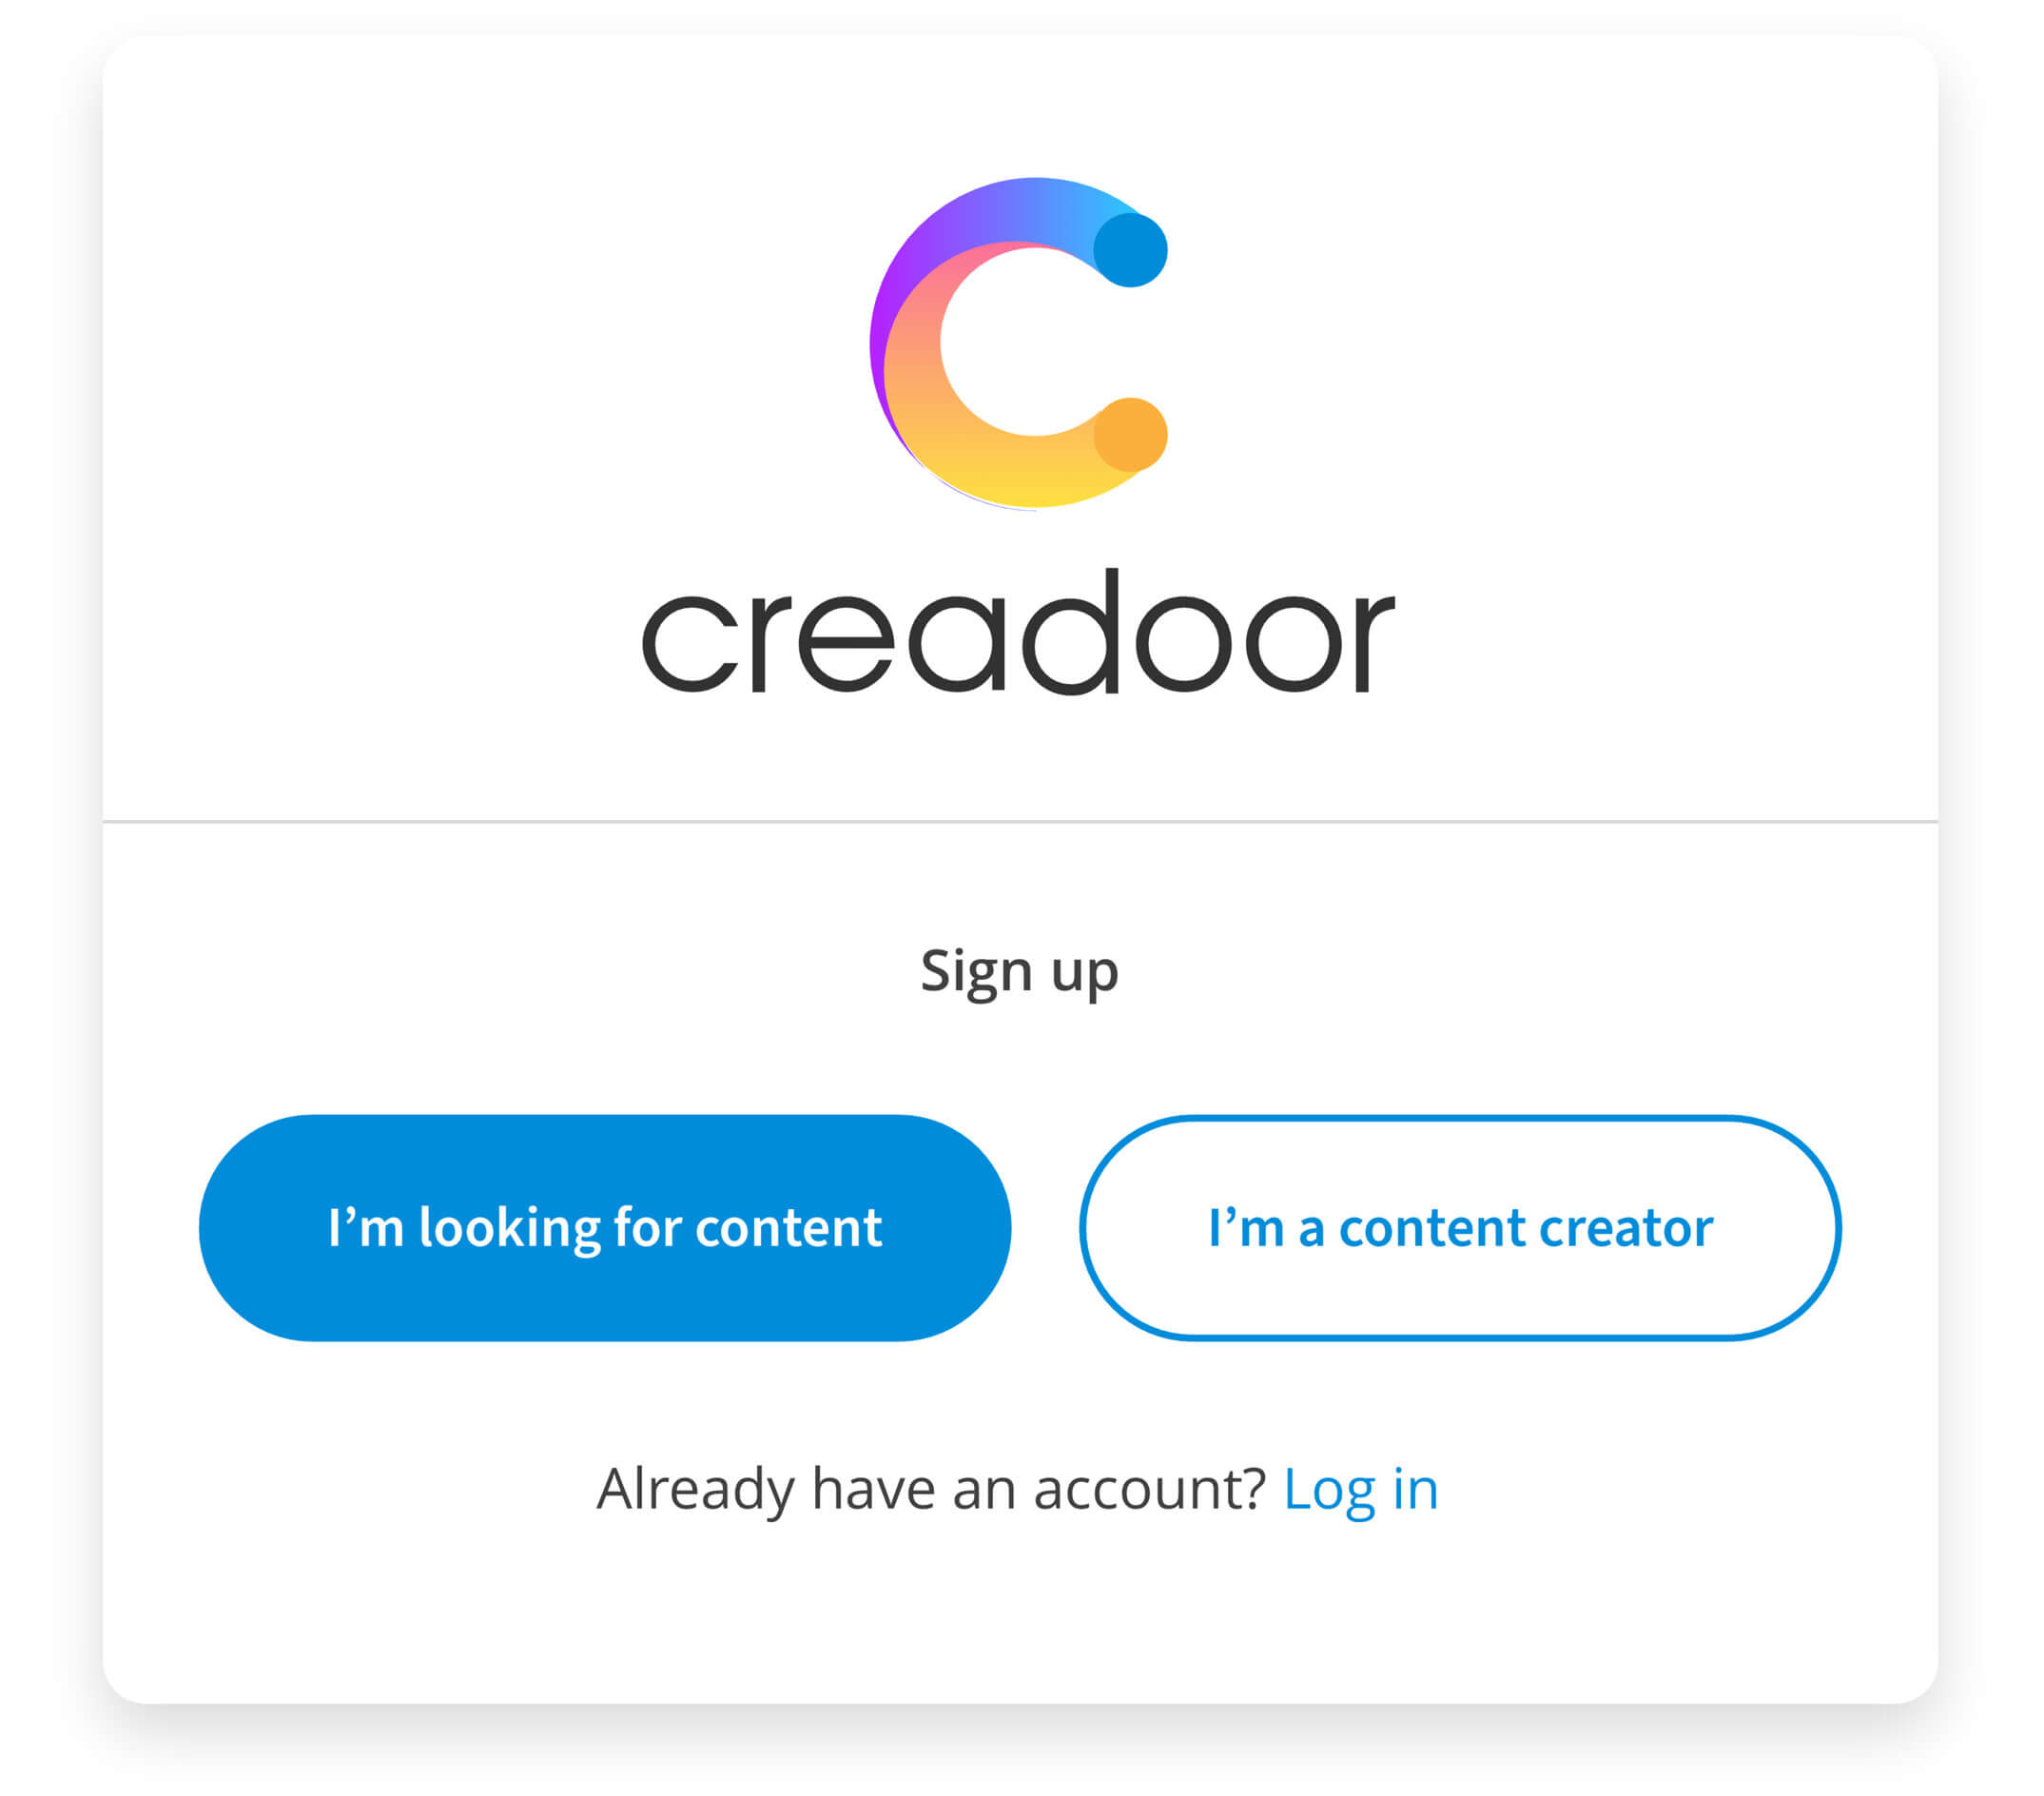 Creadoor - sign up dialogue